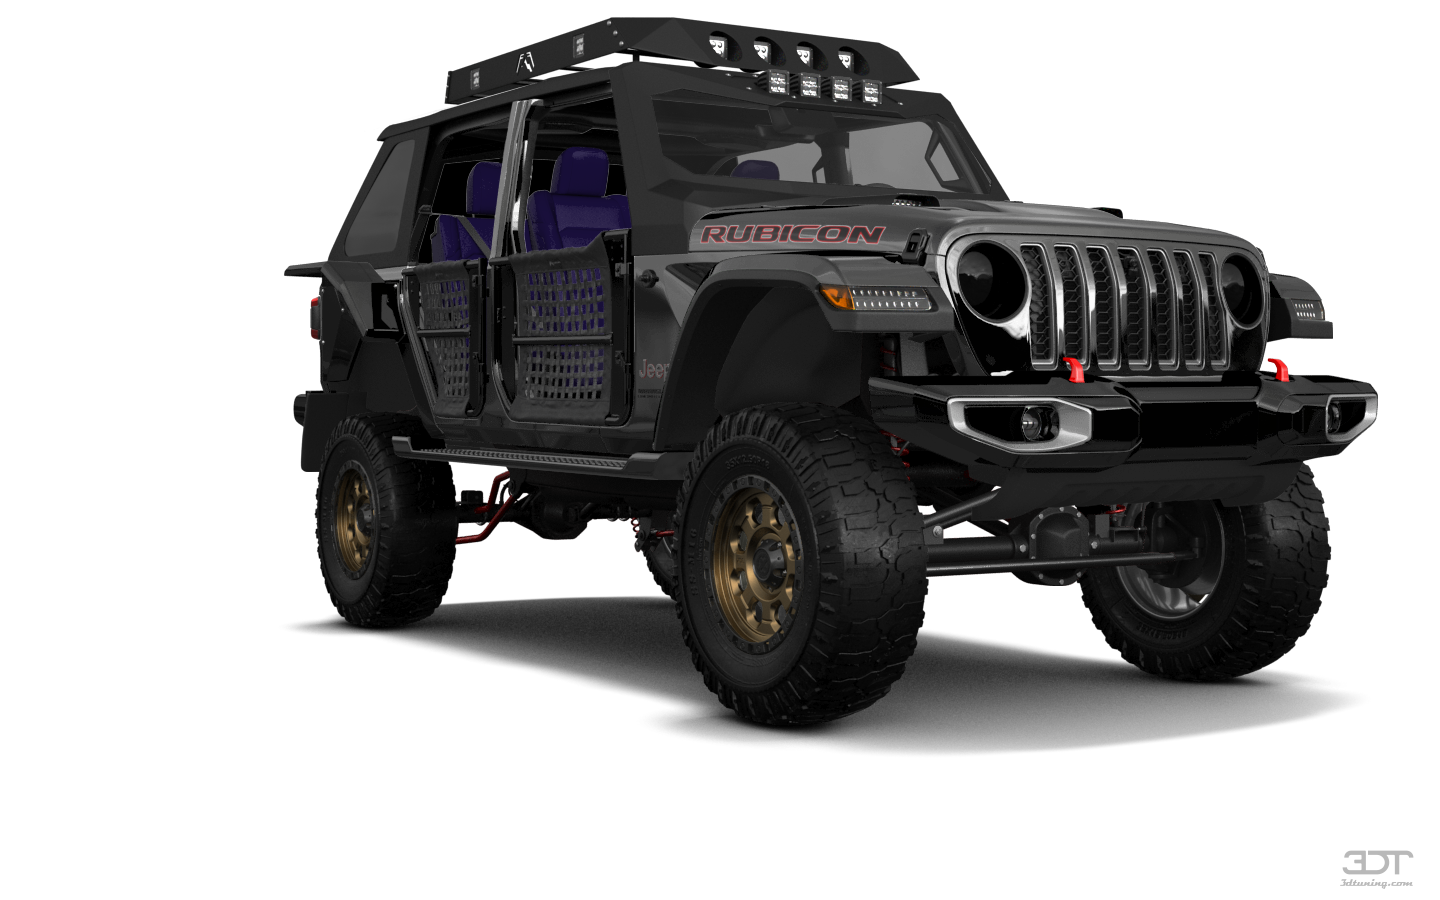 Jeep Wrangler Rubicon JL 4 Door SUV 2017